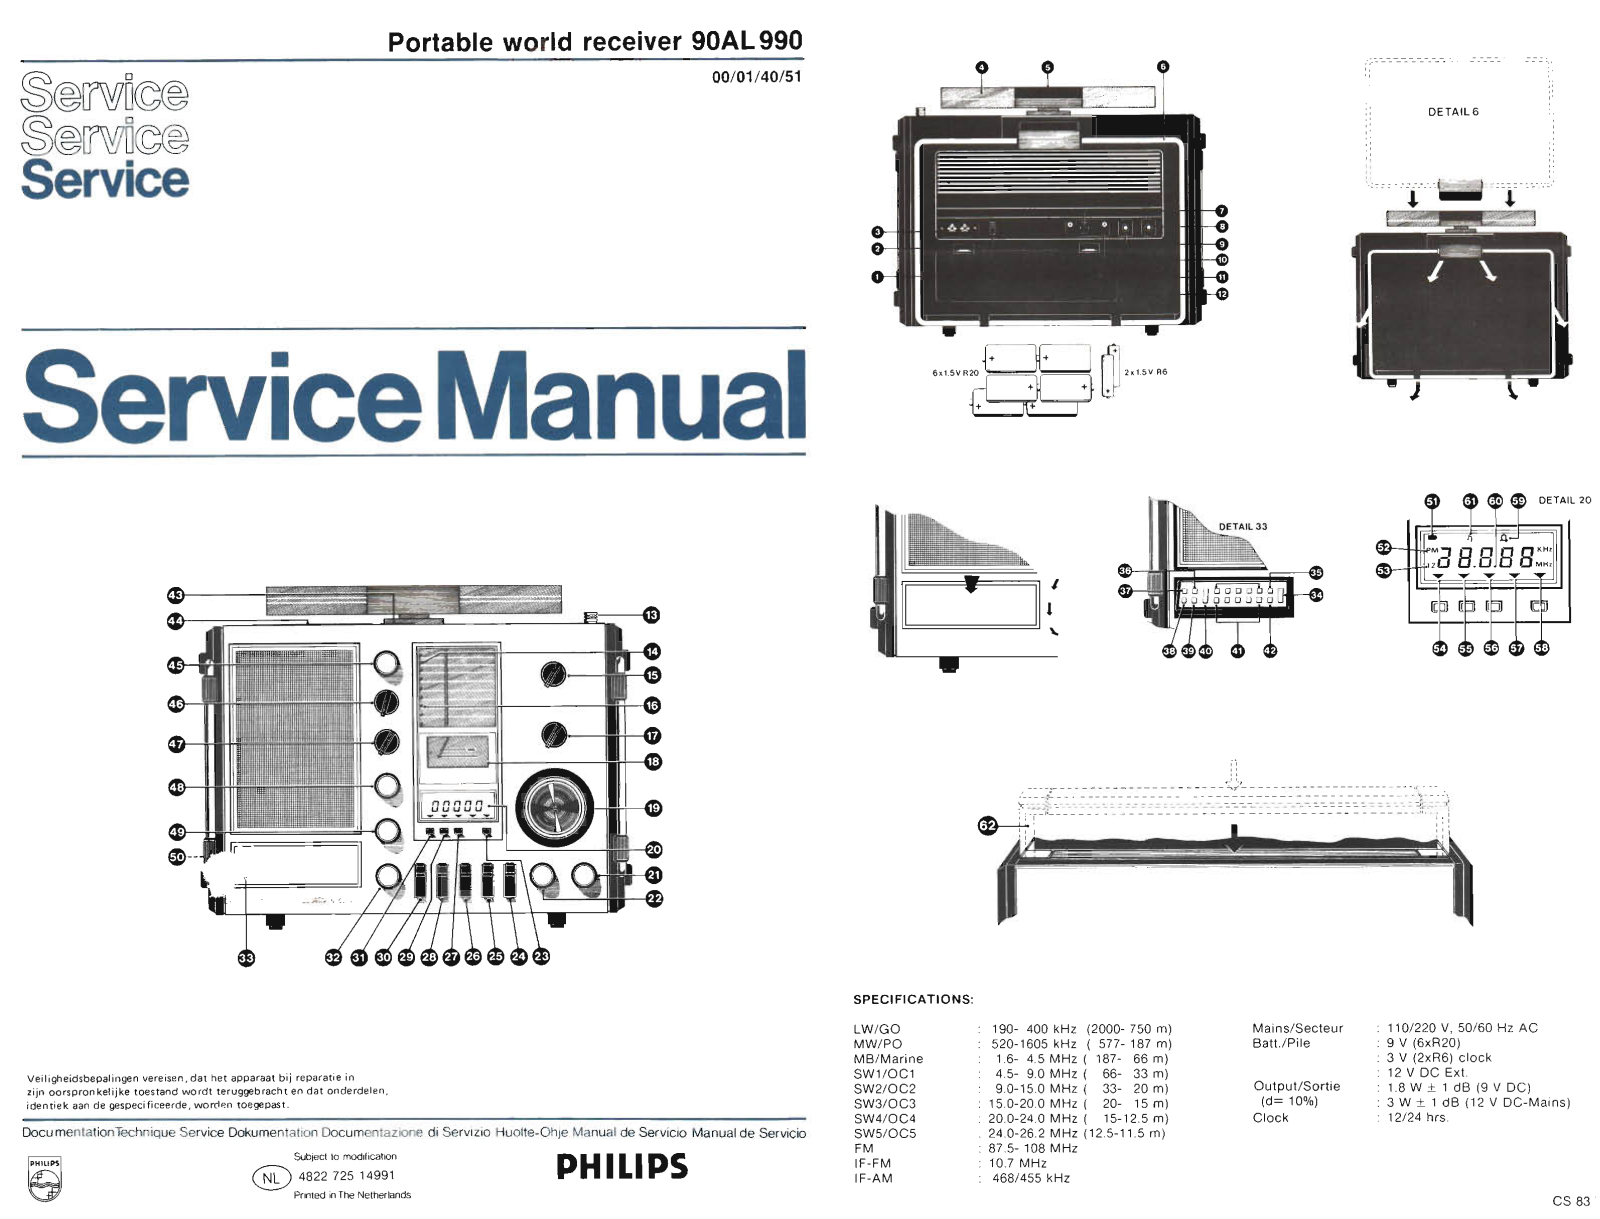 Philips 90-AL-990 Service Manual